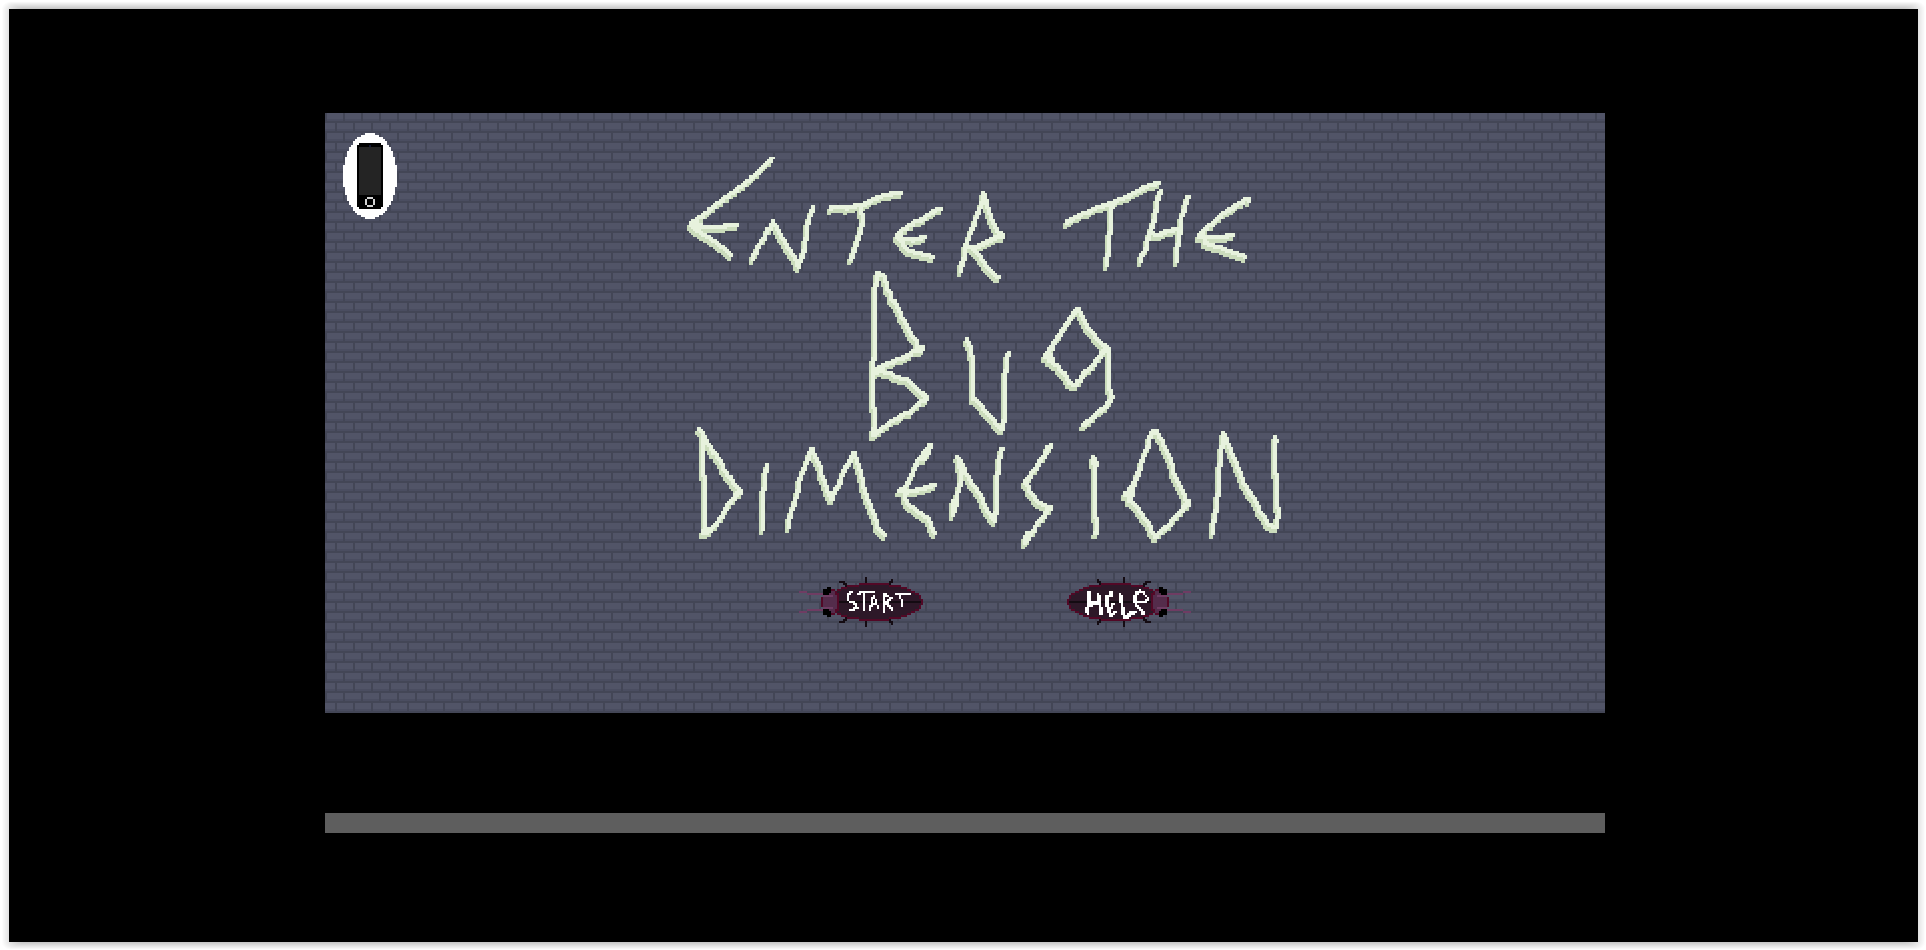 Bug Dimension